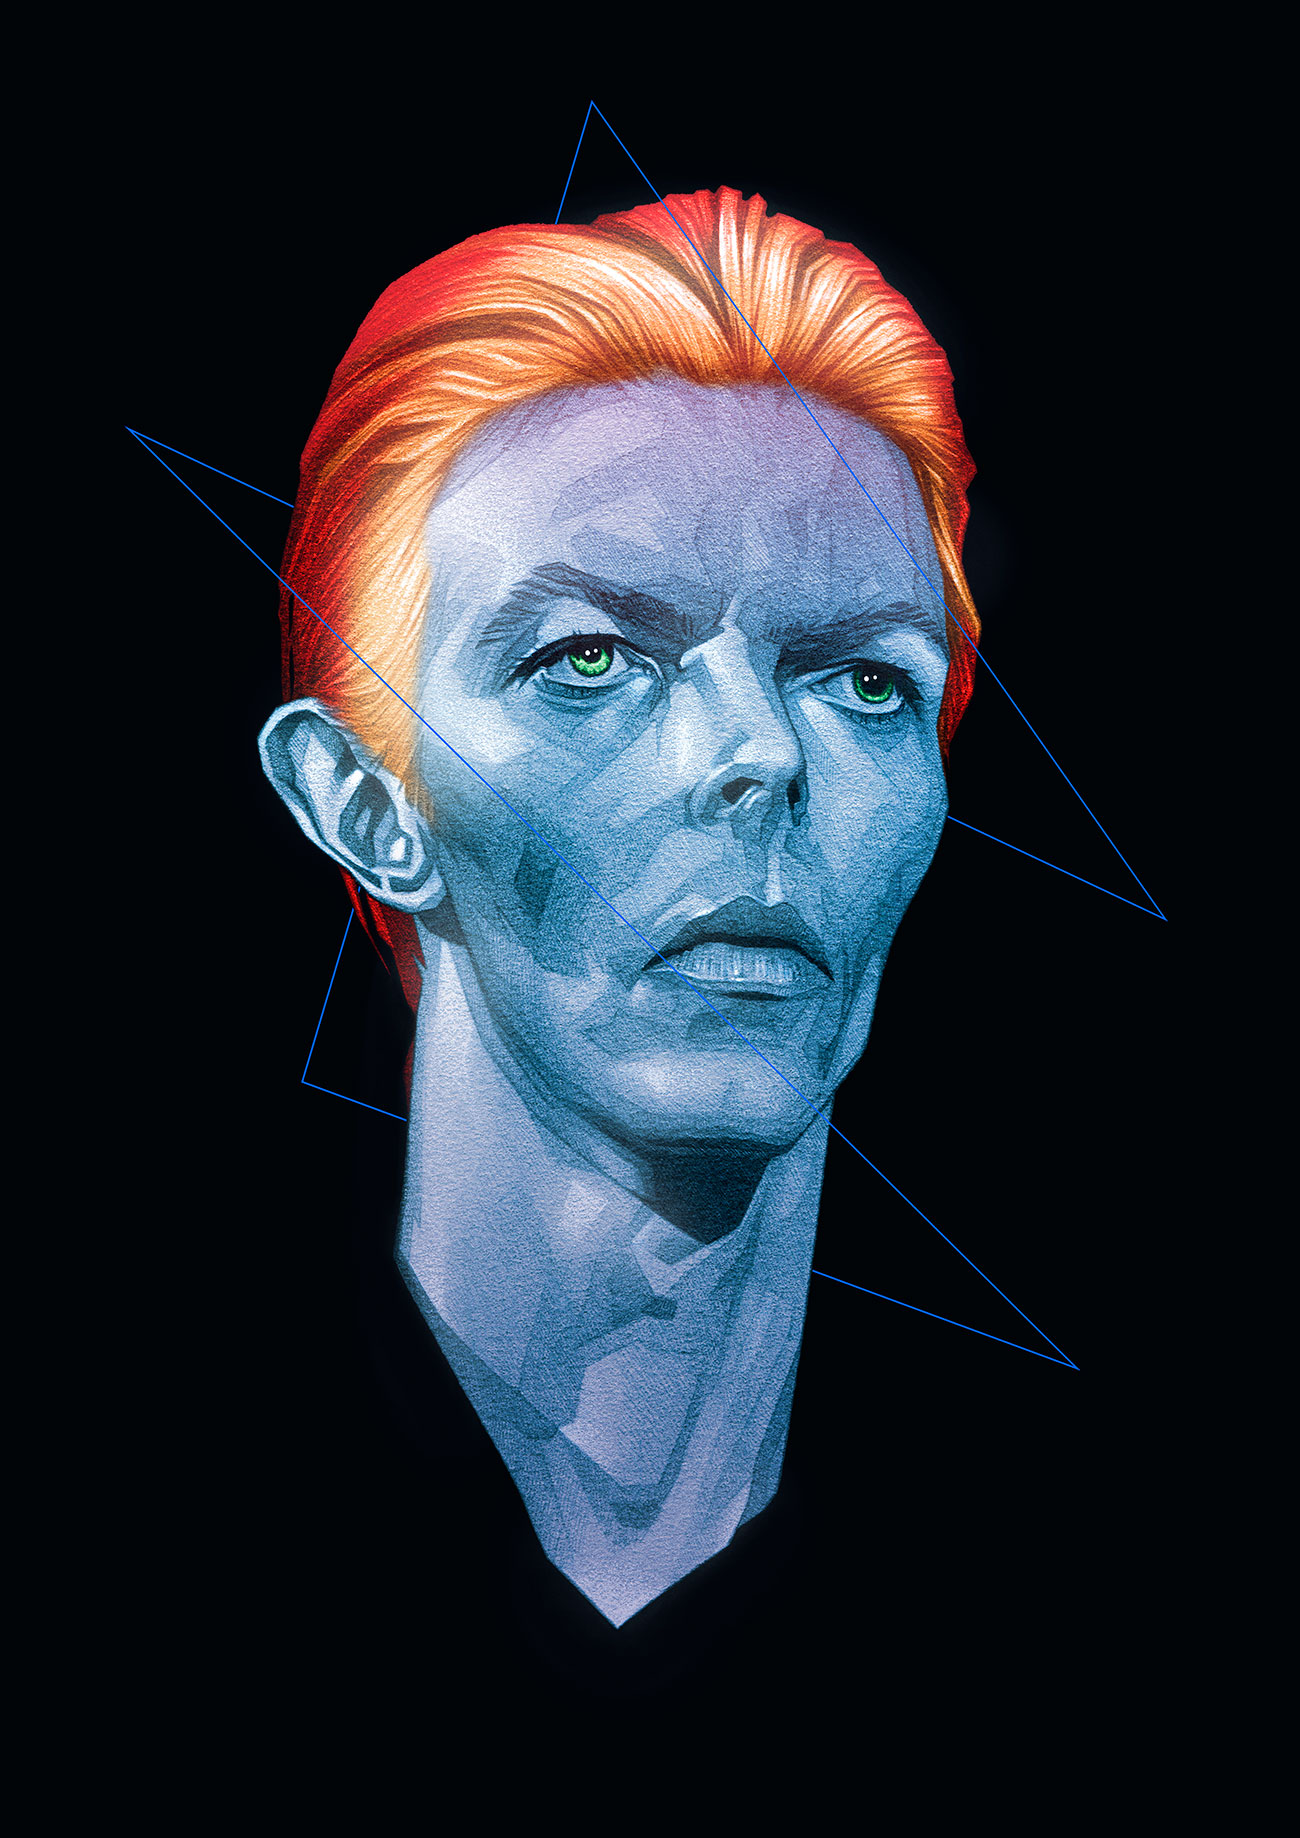 Bowie 1976. The Thin White Duke.